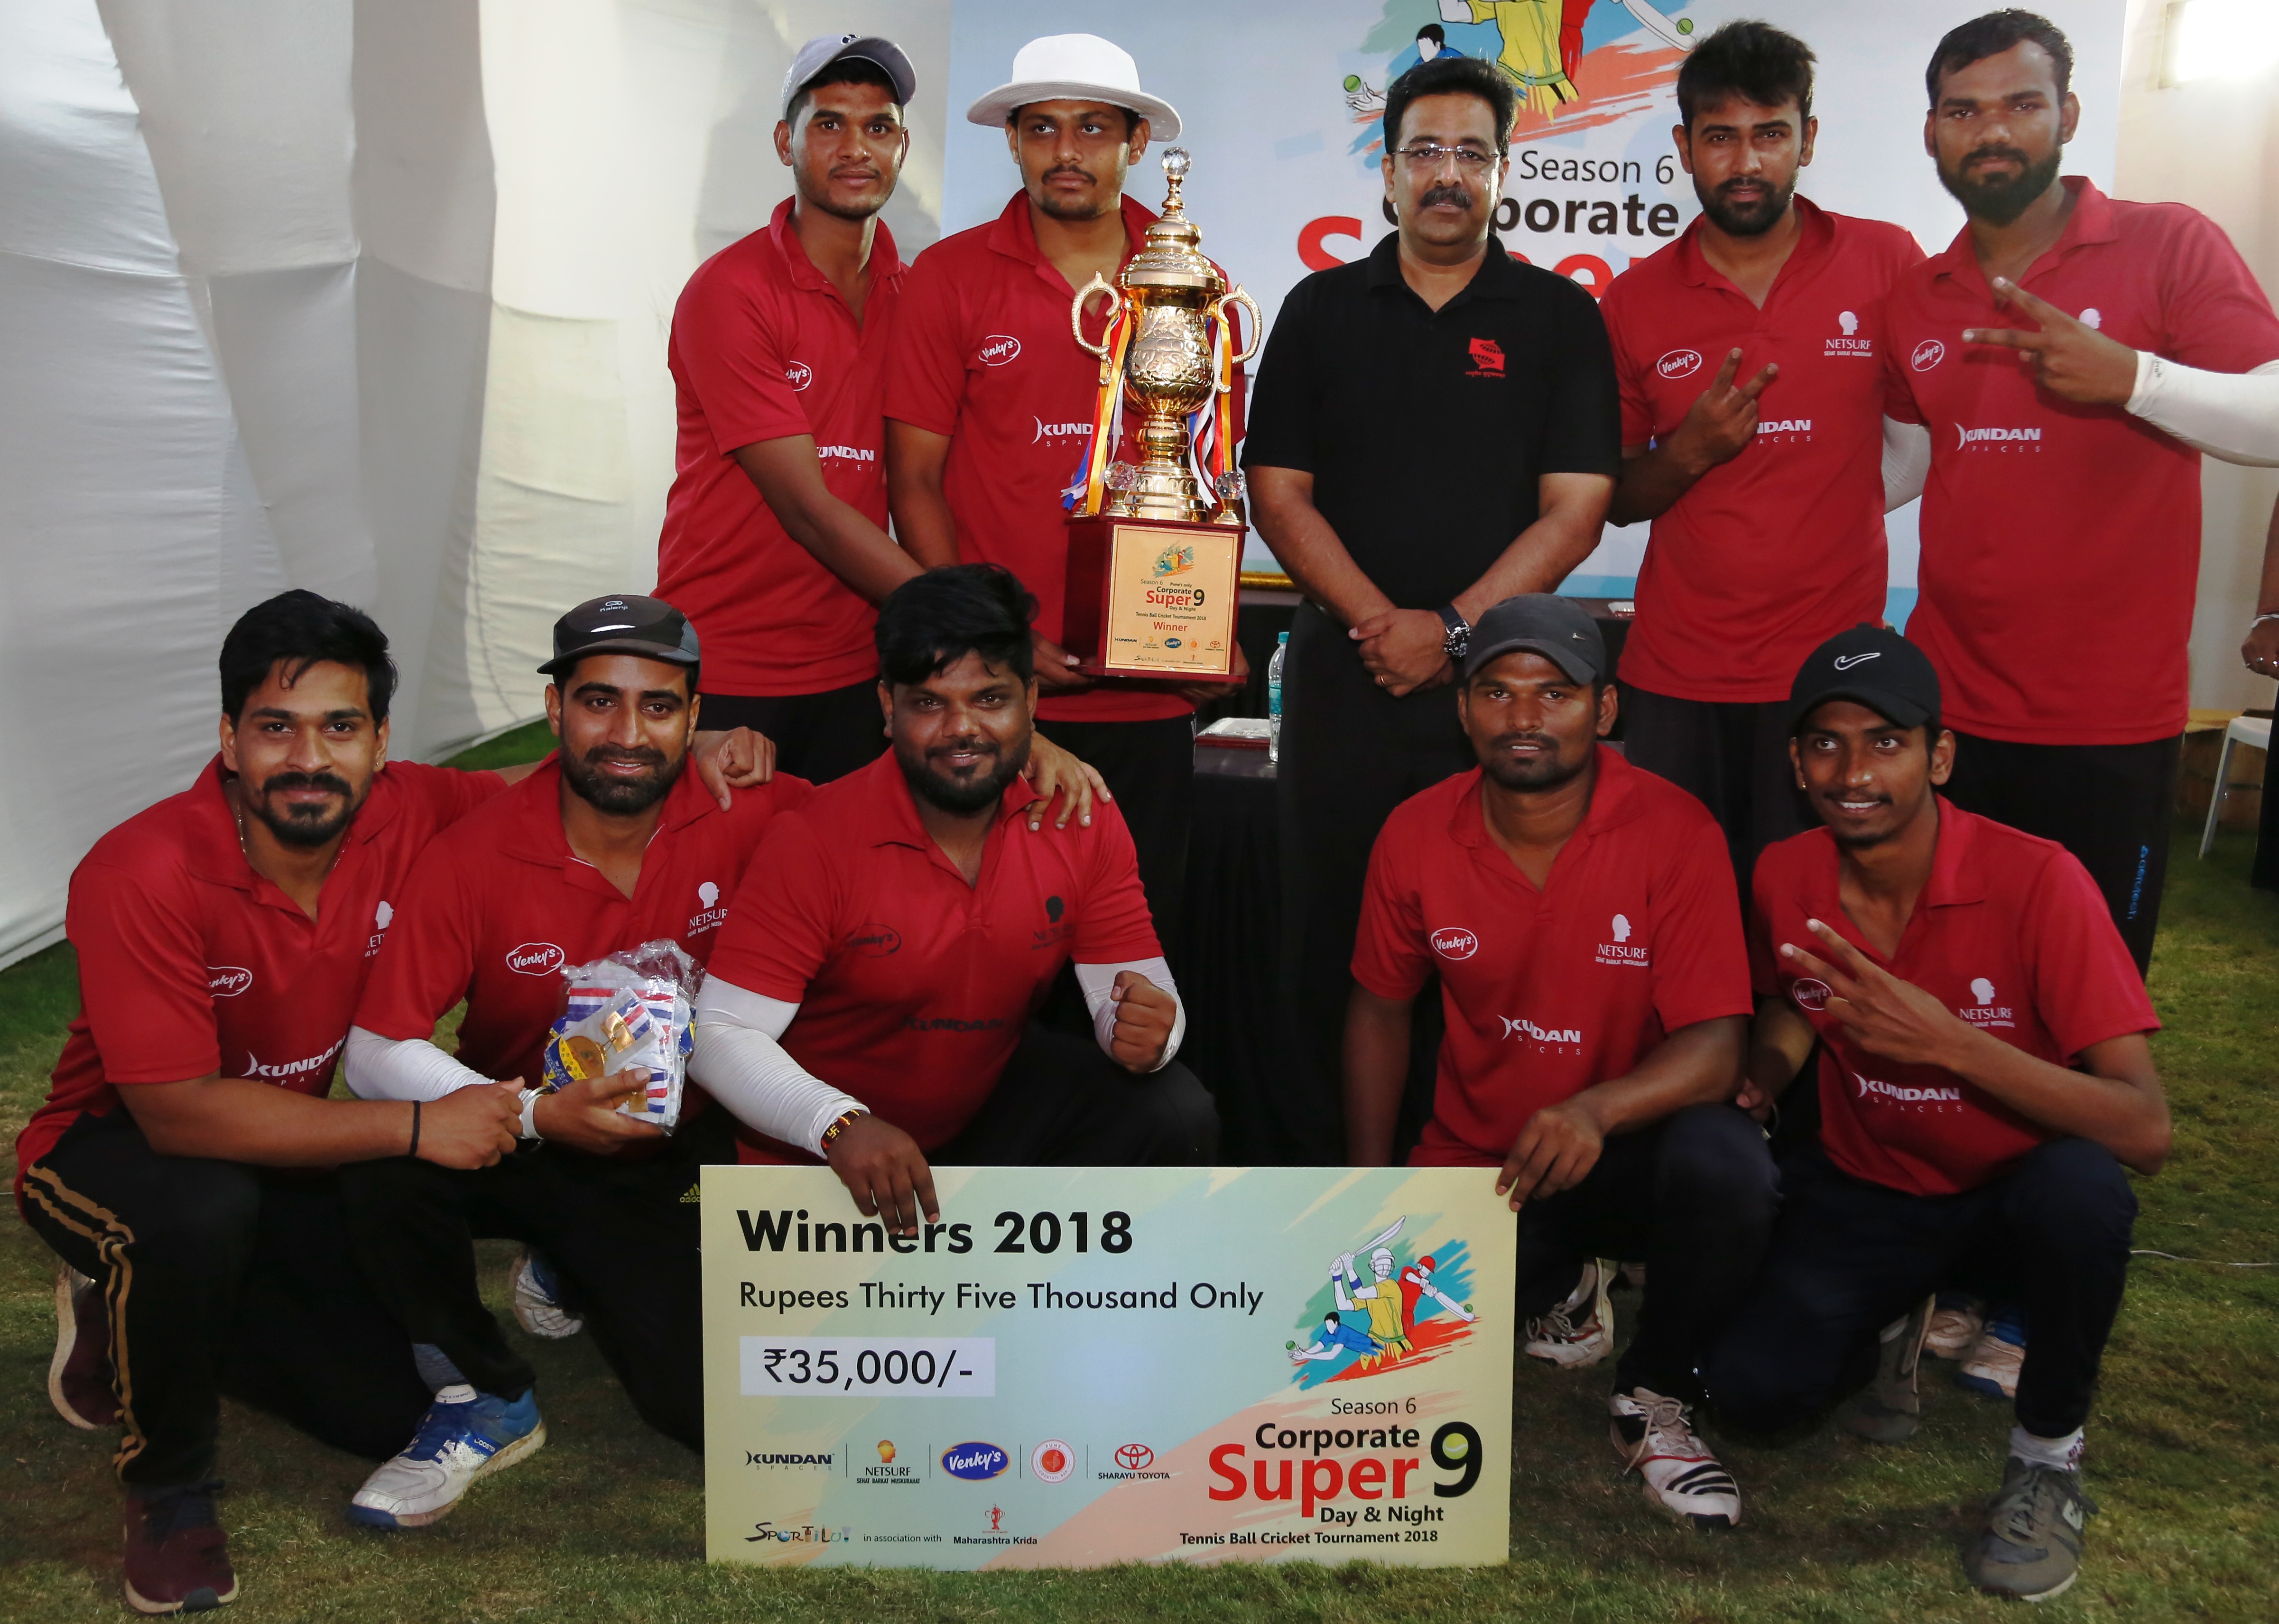 6व्या कॉर्पोरेट सुपर 9 टी-20 क्रिकेट स्पर्धेत  सेल २ वर्ल्ड संघाला विजेतेपद